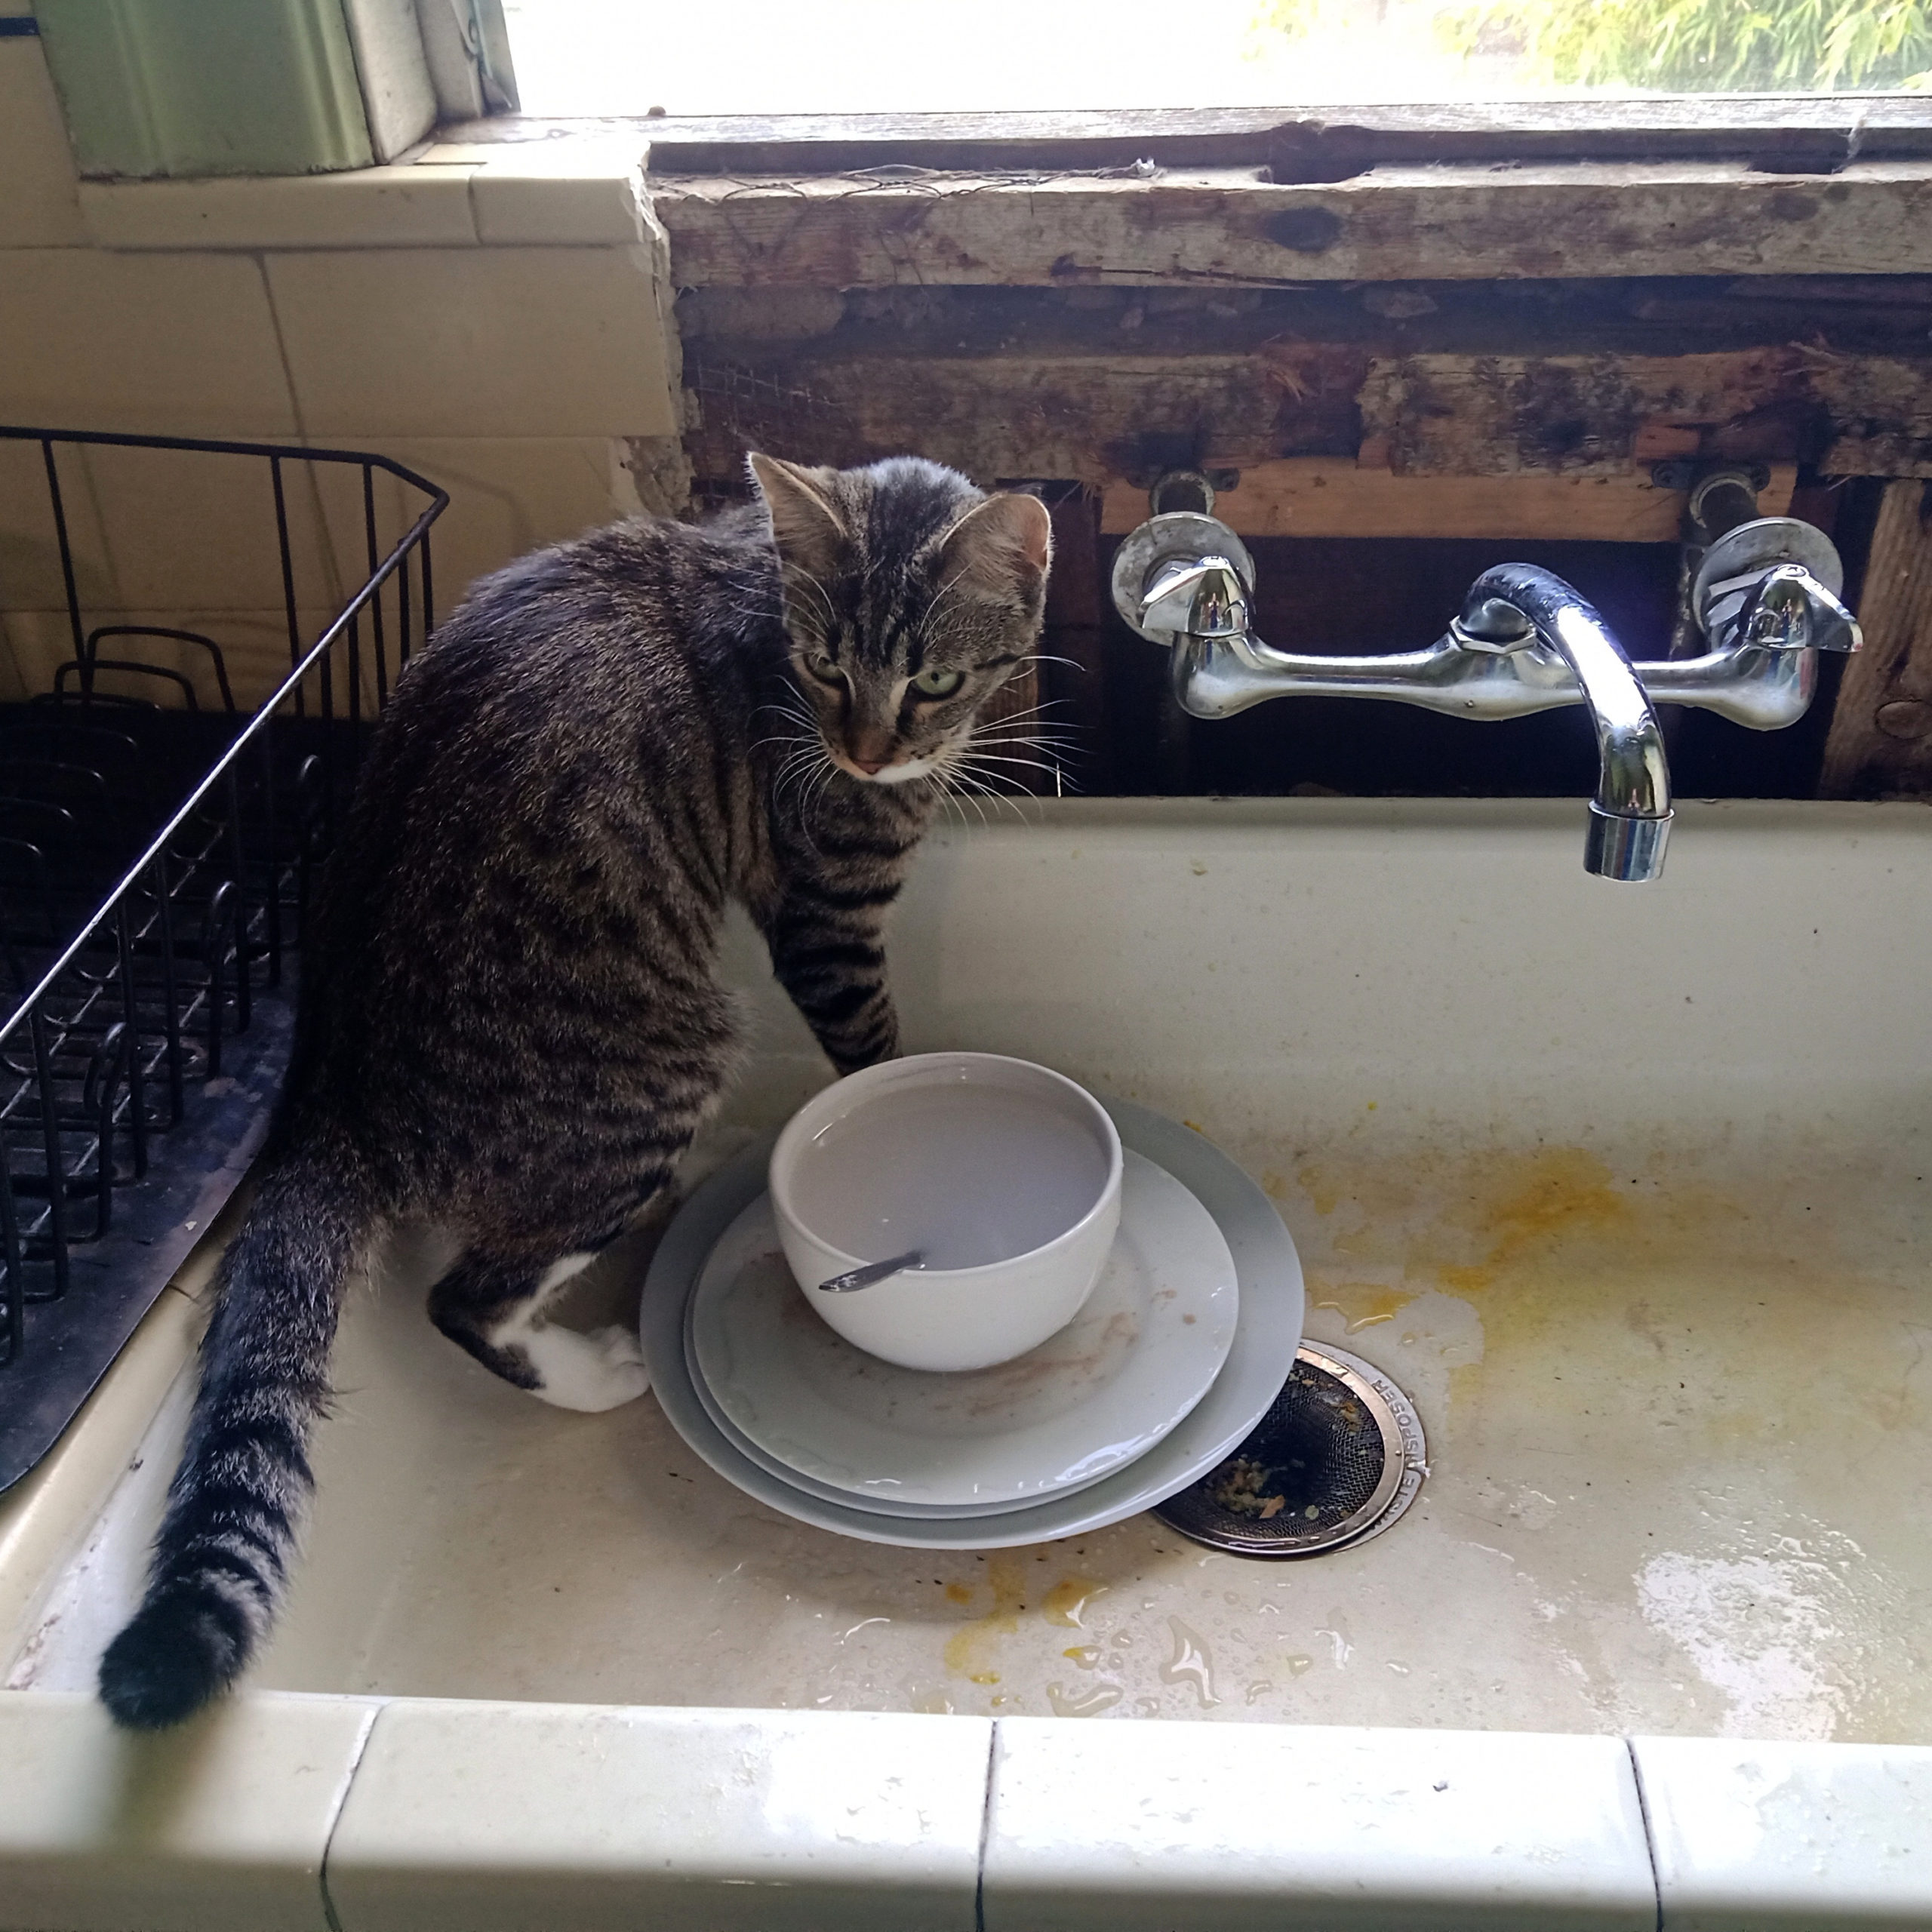 Walter in the kitchen sink